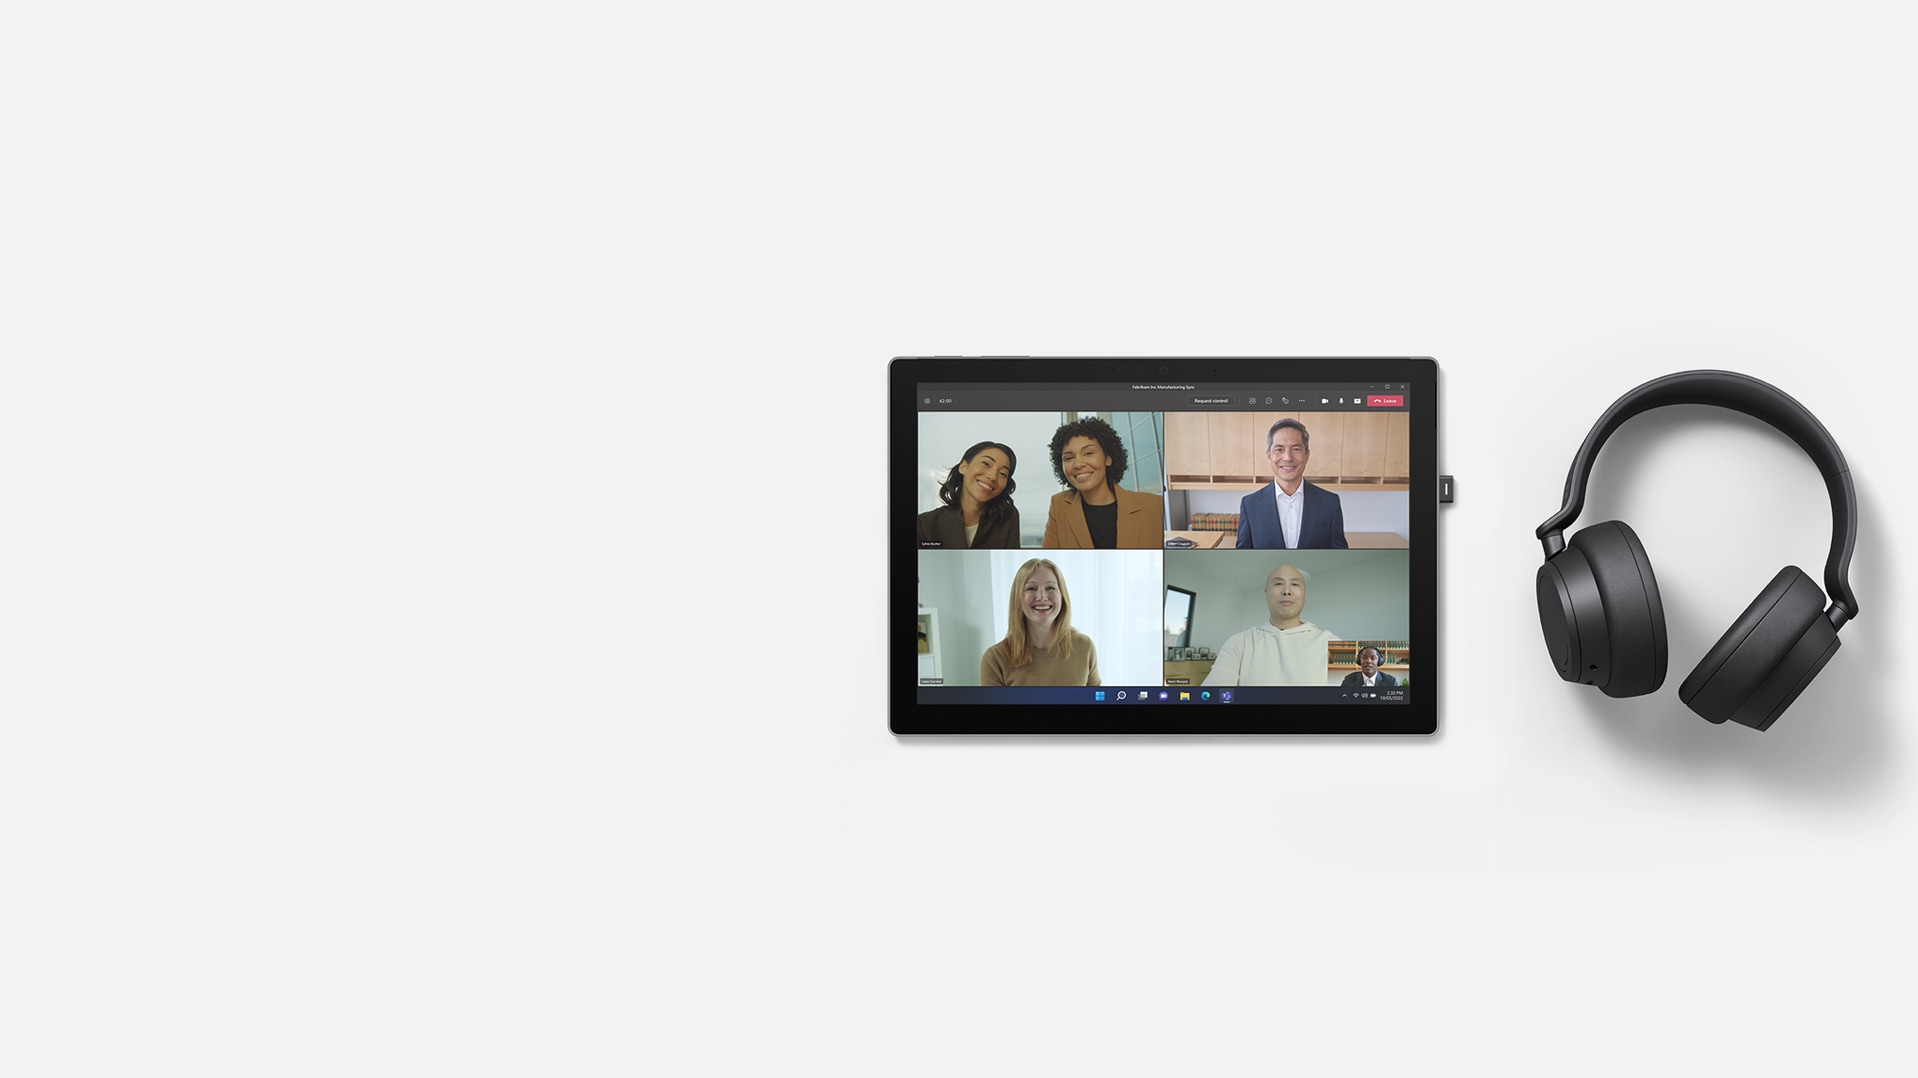 يتوفر الوضع "معًا" في Microsoft Teams على Surface Pro 7+ مع وضع Surface Headphones 2+ على الجانب الأيمن